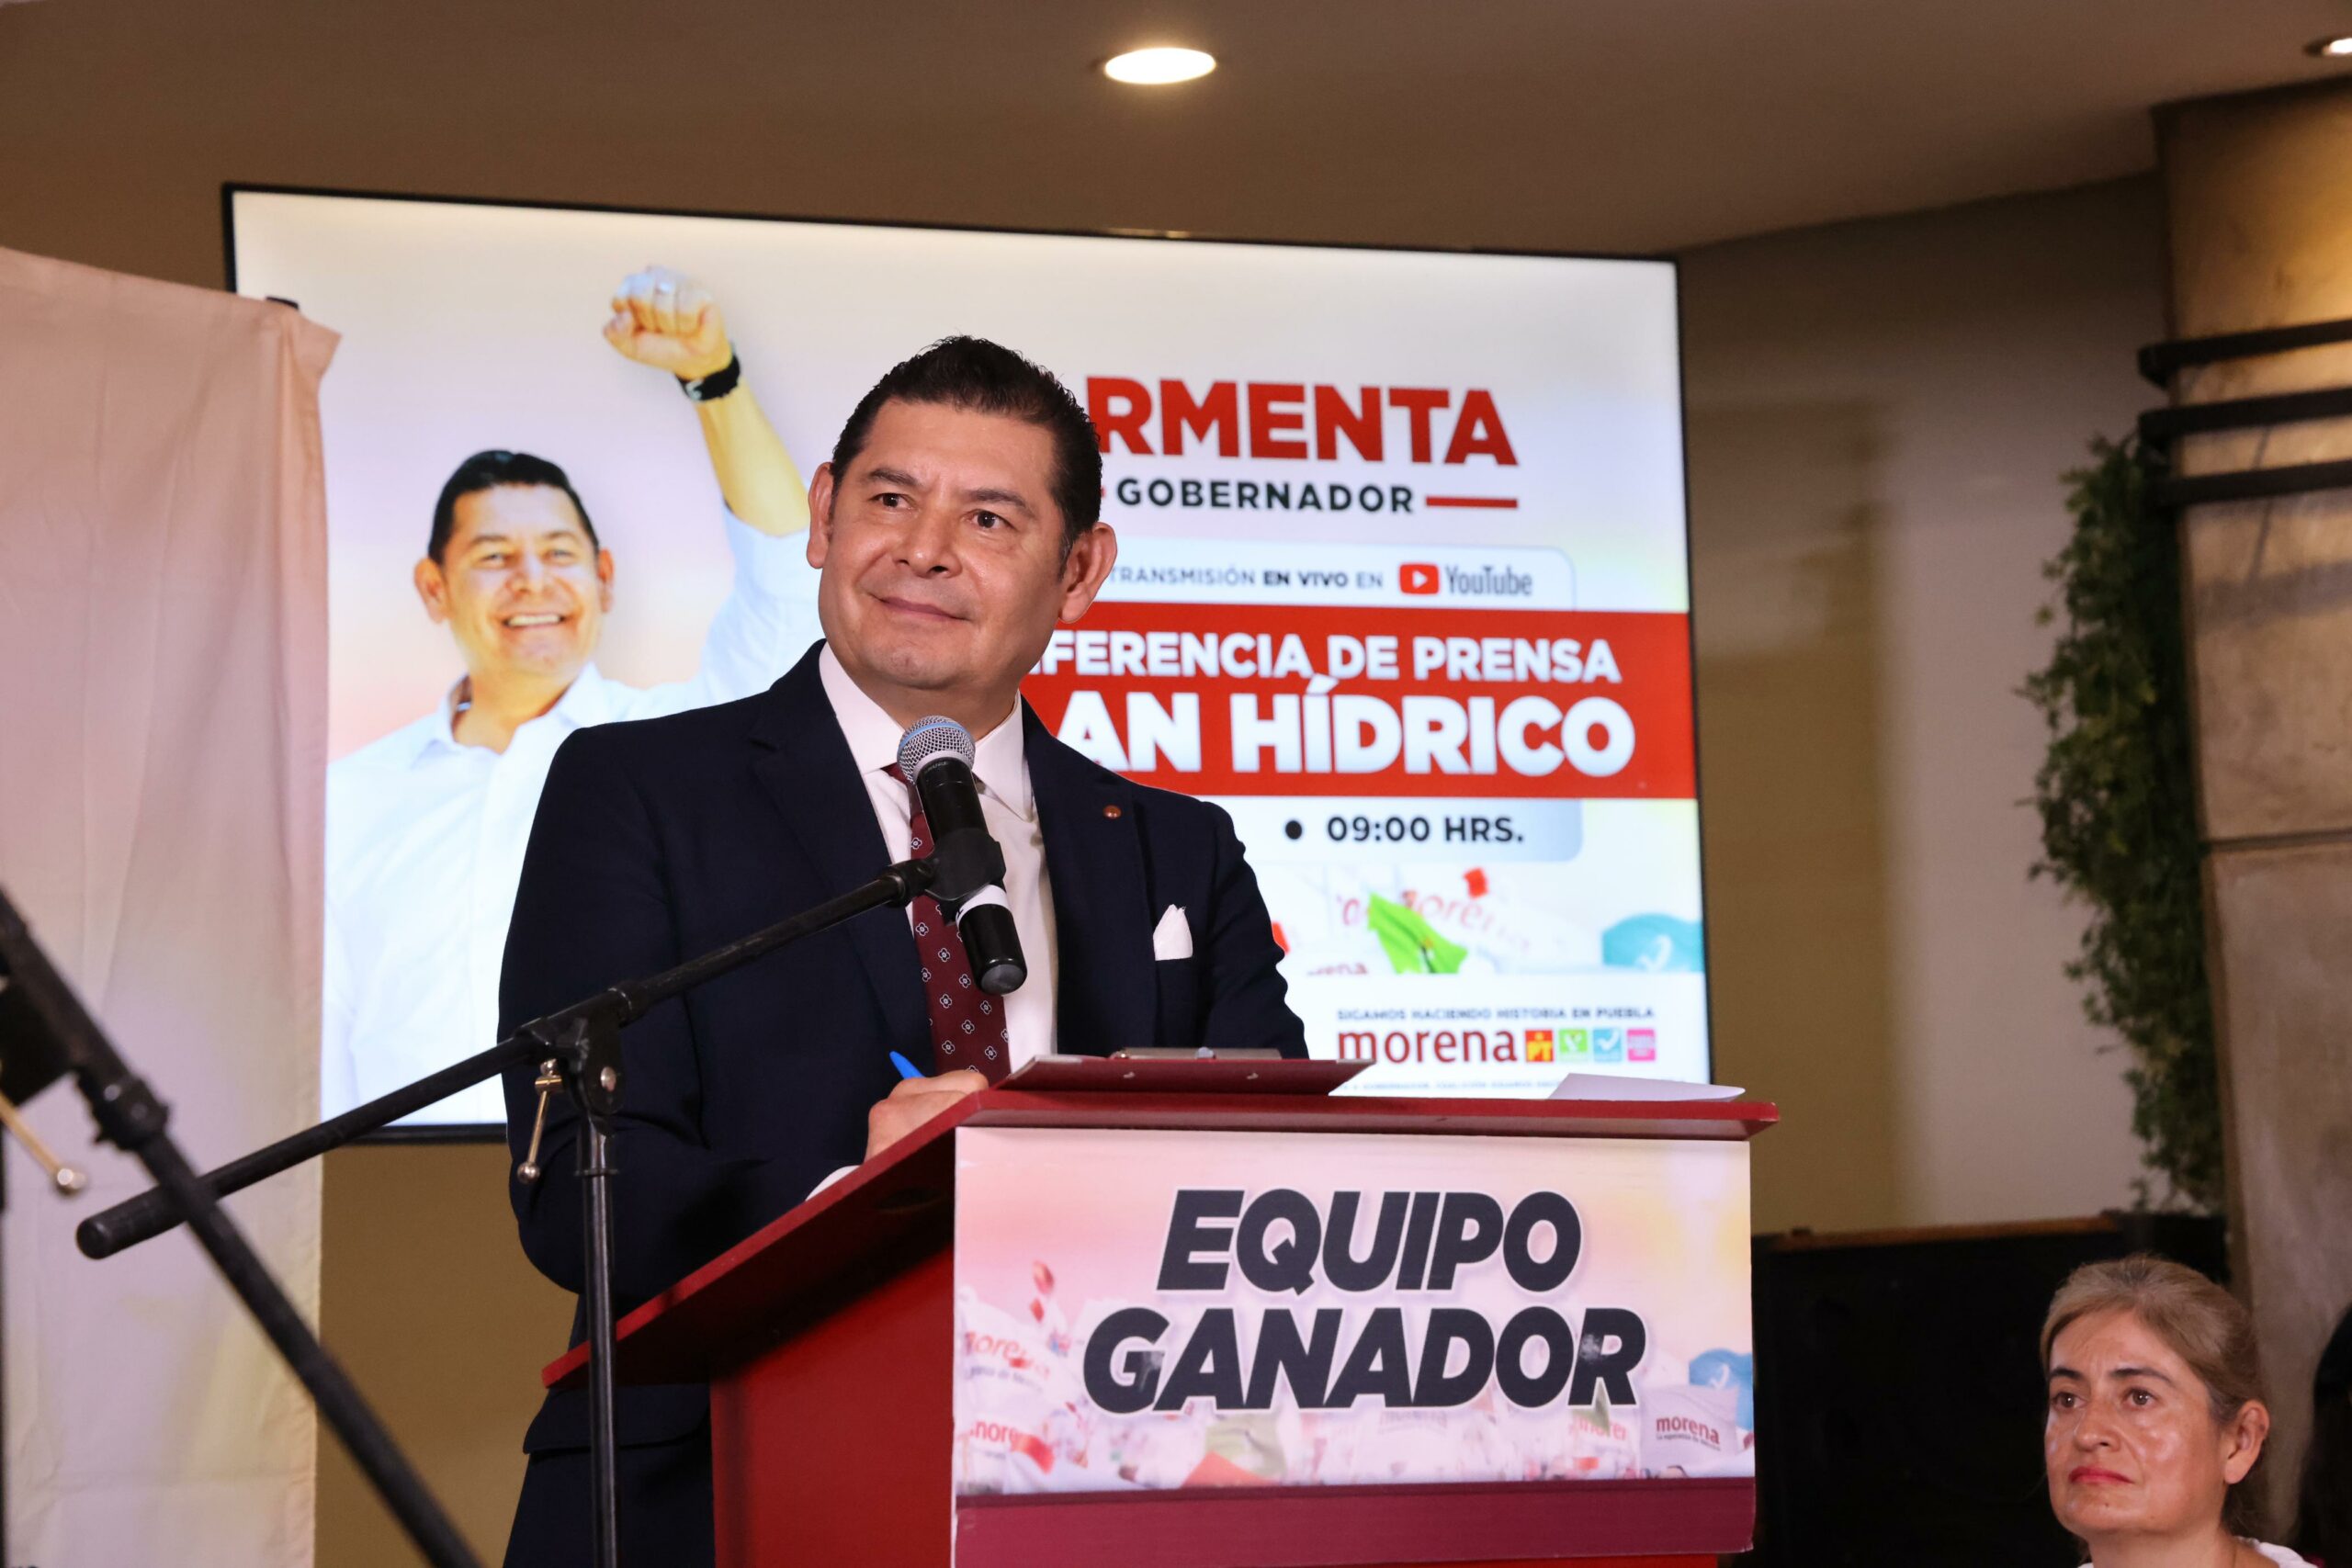 Armenta garantiza que se perfeccionará plan hídrico para Puebla